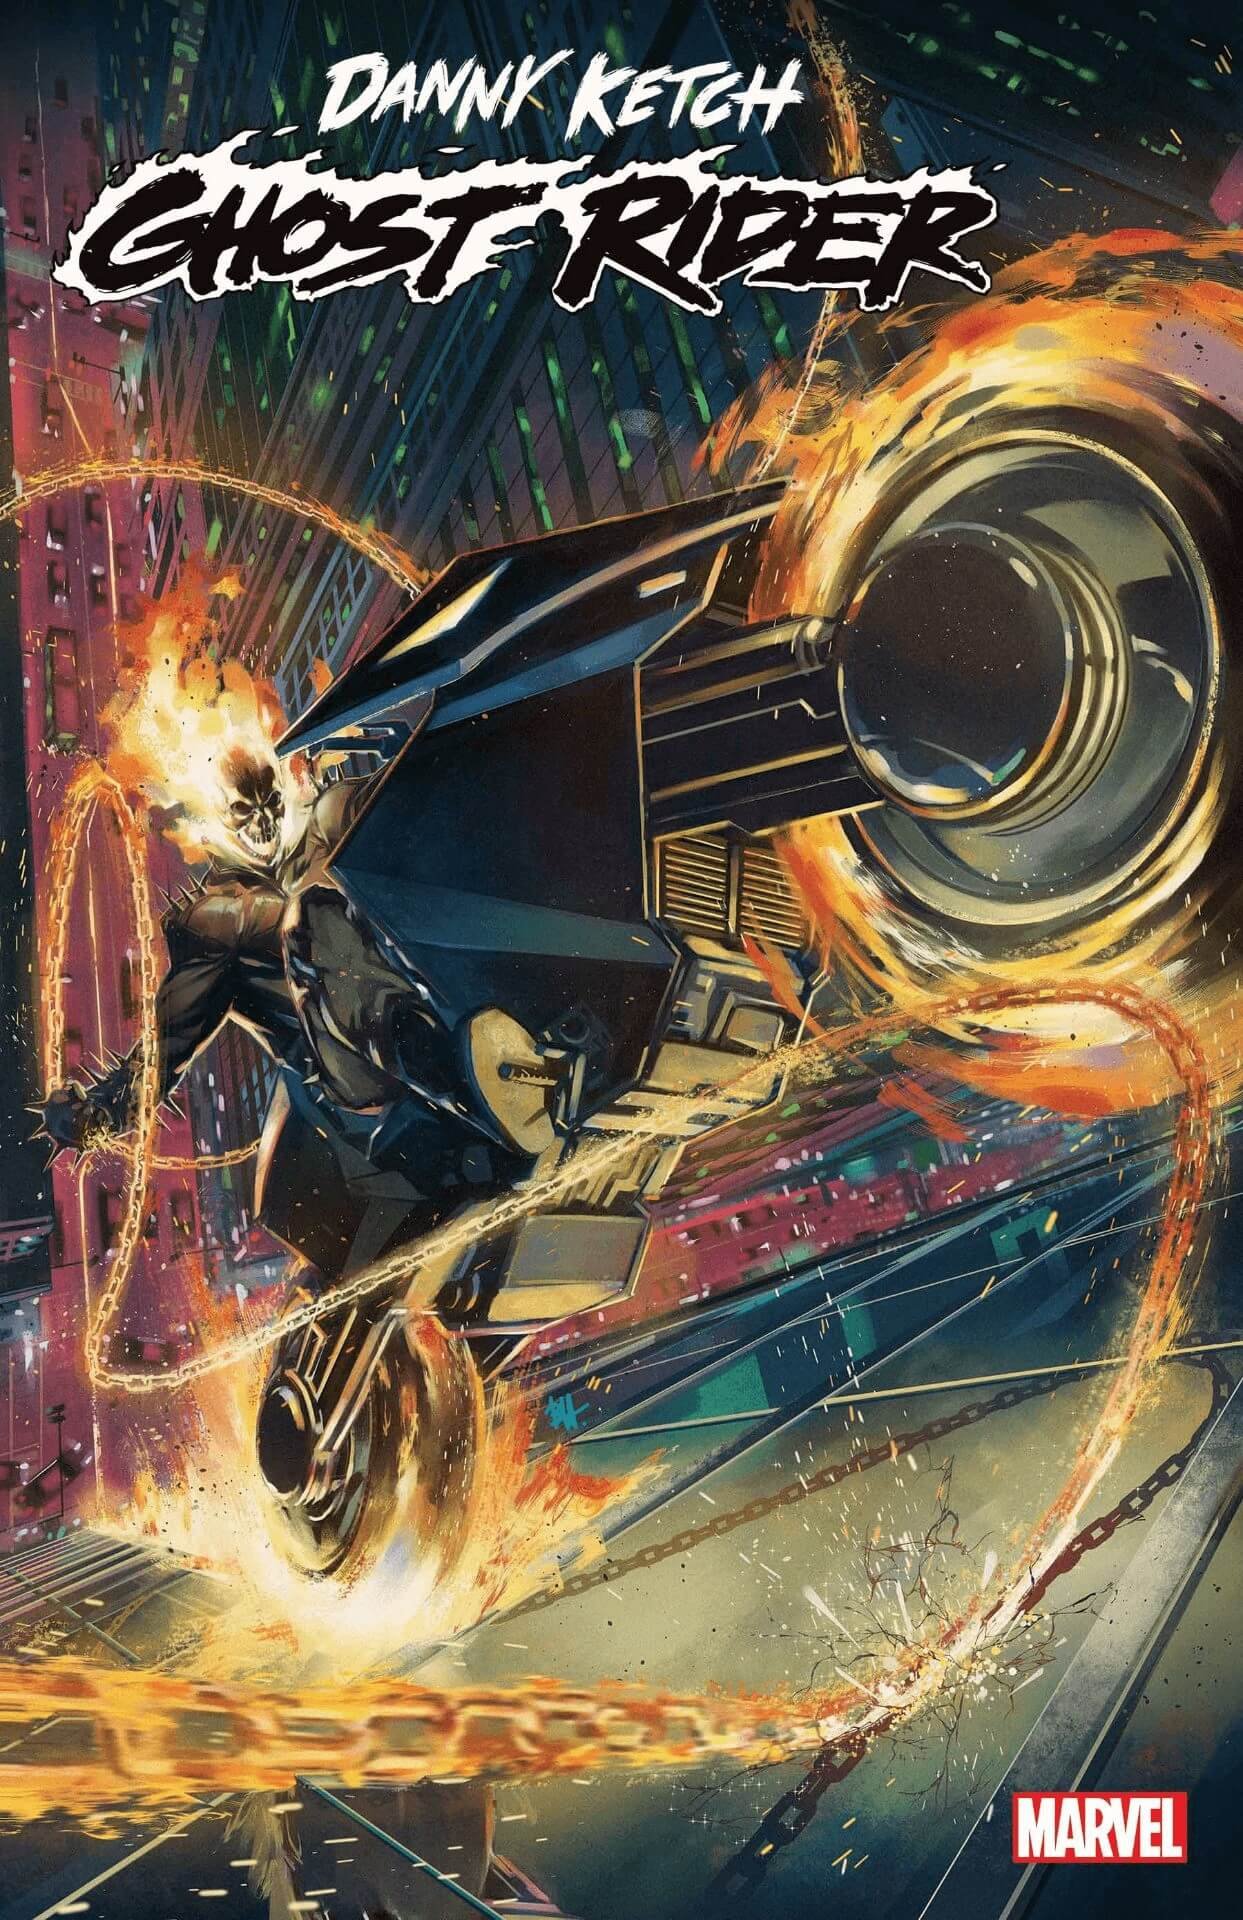 Couverture de Danny Ketch : Ghost Rider 1 par Ben Harvey, à paraître en mai 2023.